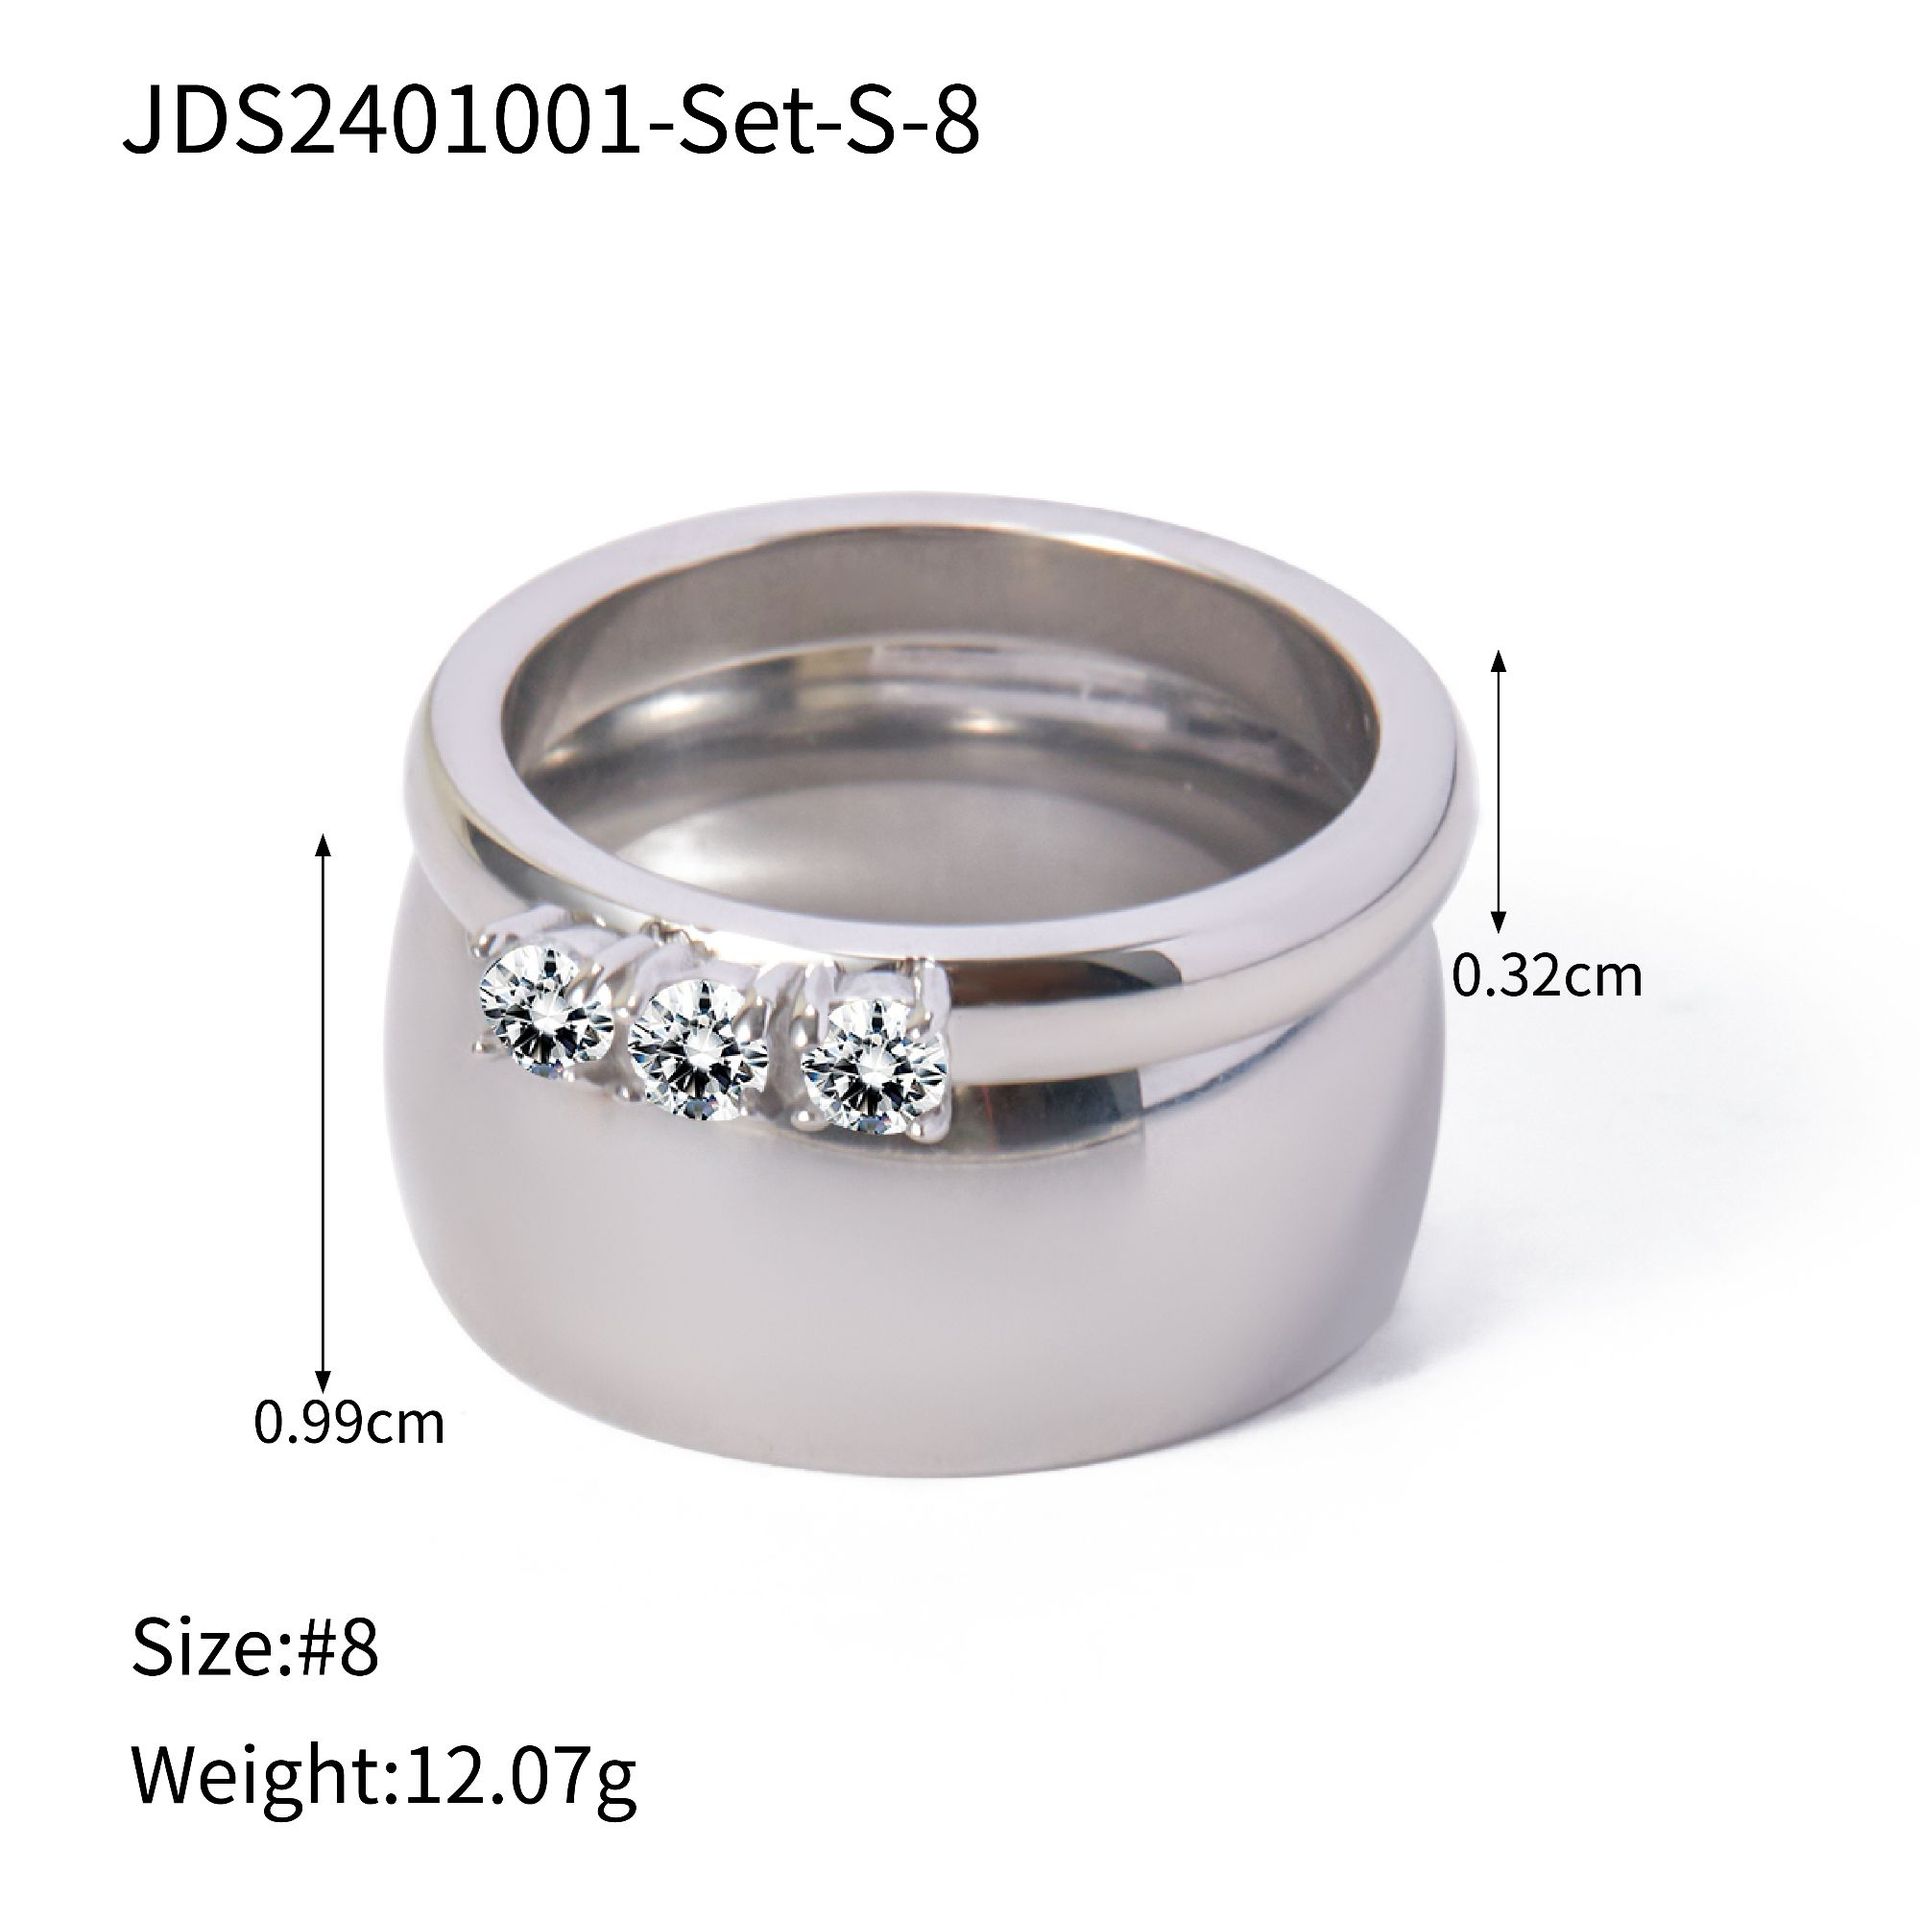 6:JDS2401001-Set-S-8